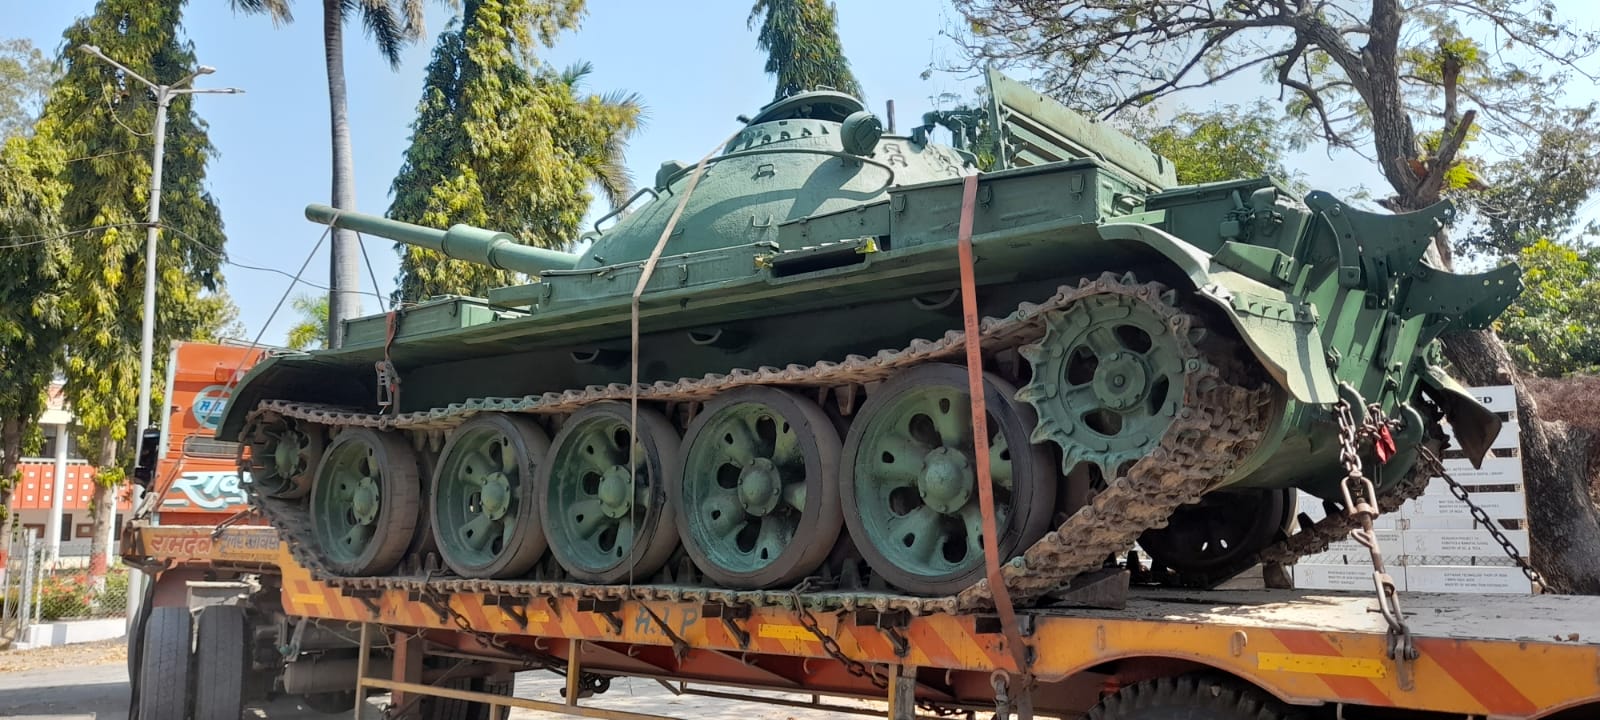 जबलपुर: शासकीय इंजीनियरिंग कॉलेज में सेना के टैंक T-55 को किया गया स्थापित..